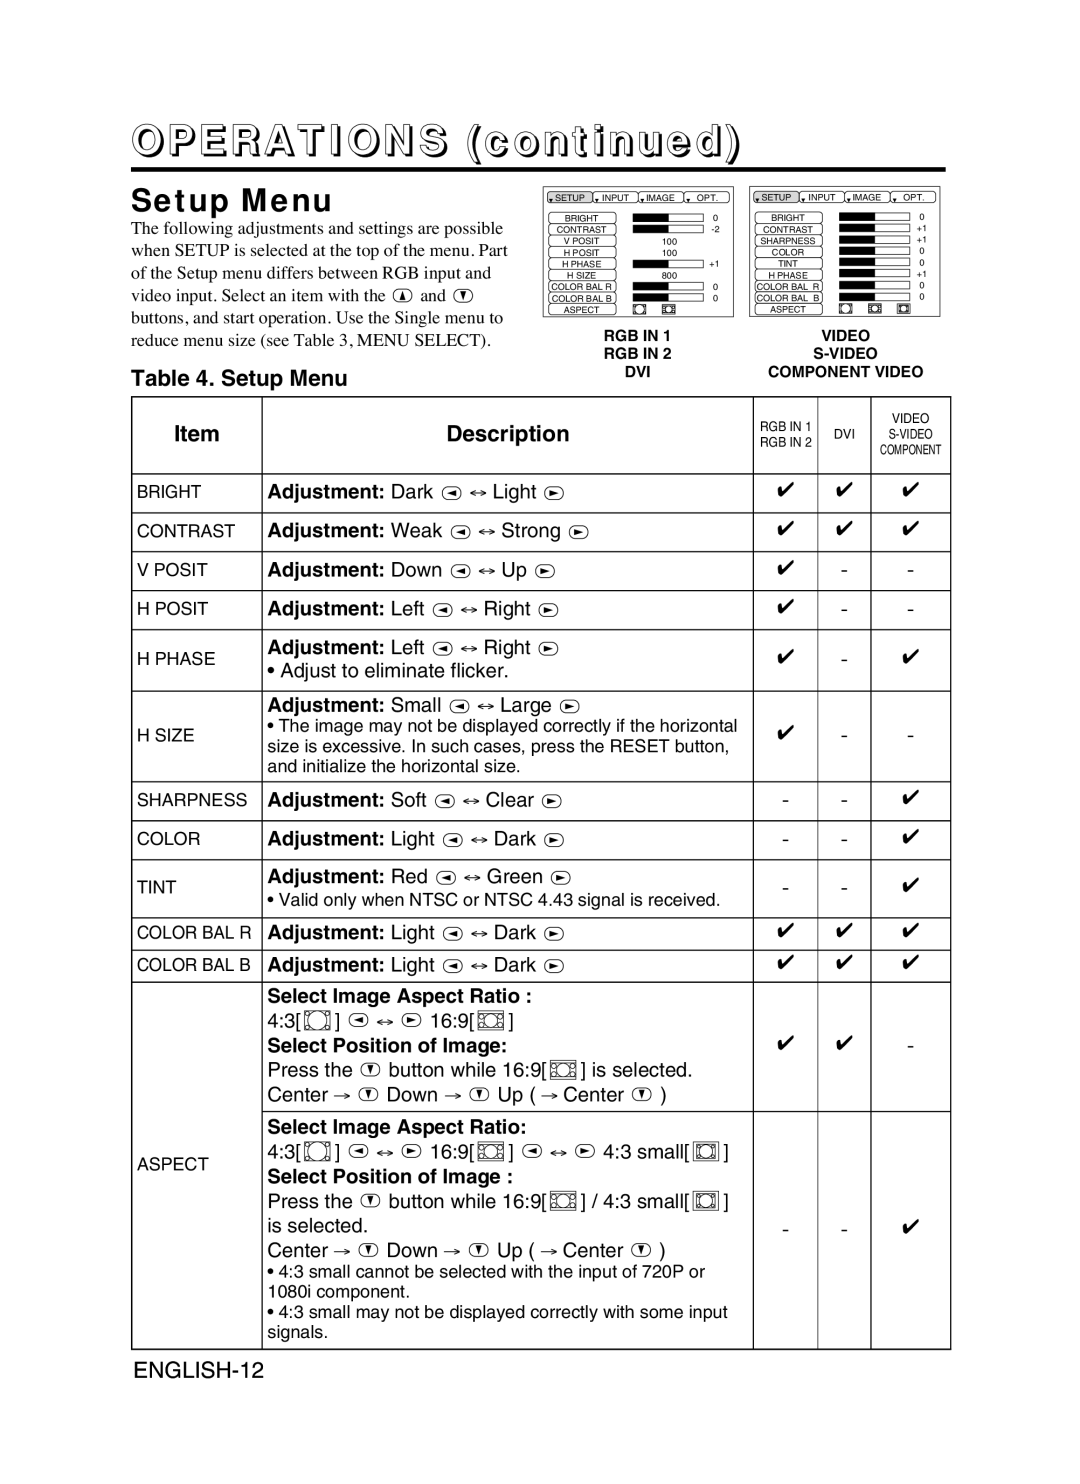 Proxima ASA DP6870 manual Setup Menu, OPERATIONS continued, Description, ENGLISH-12 